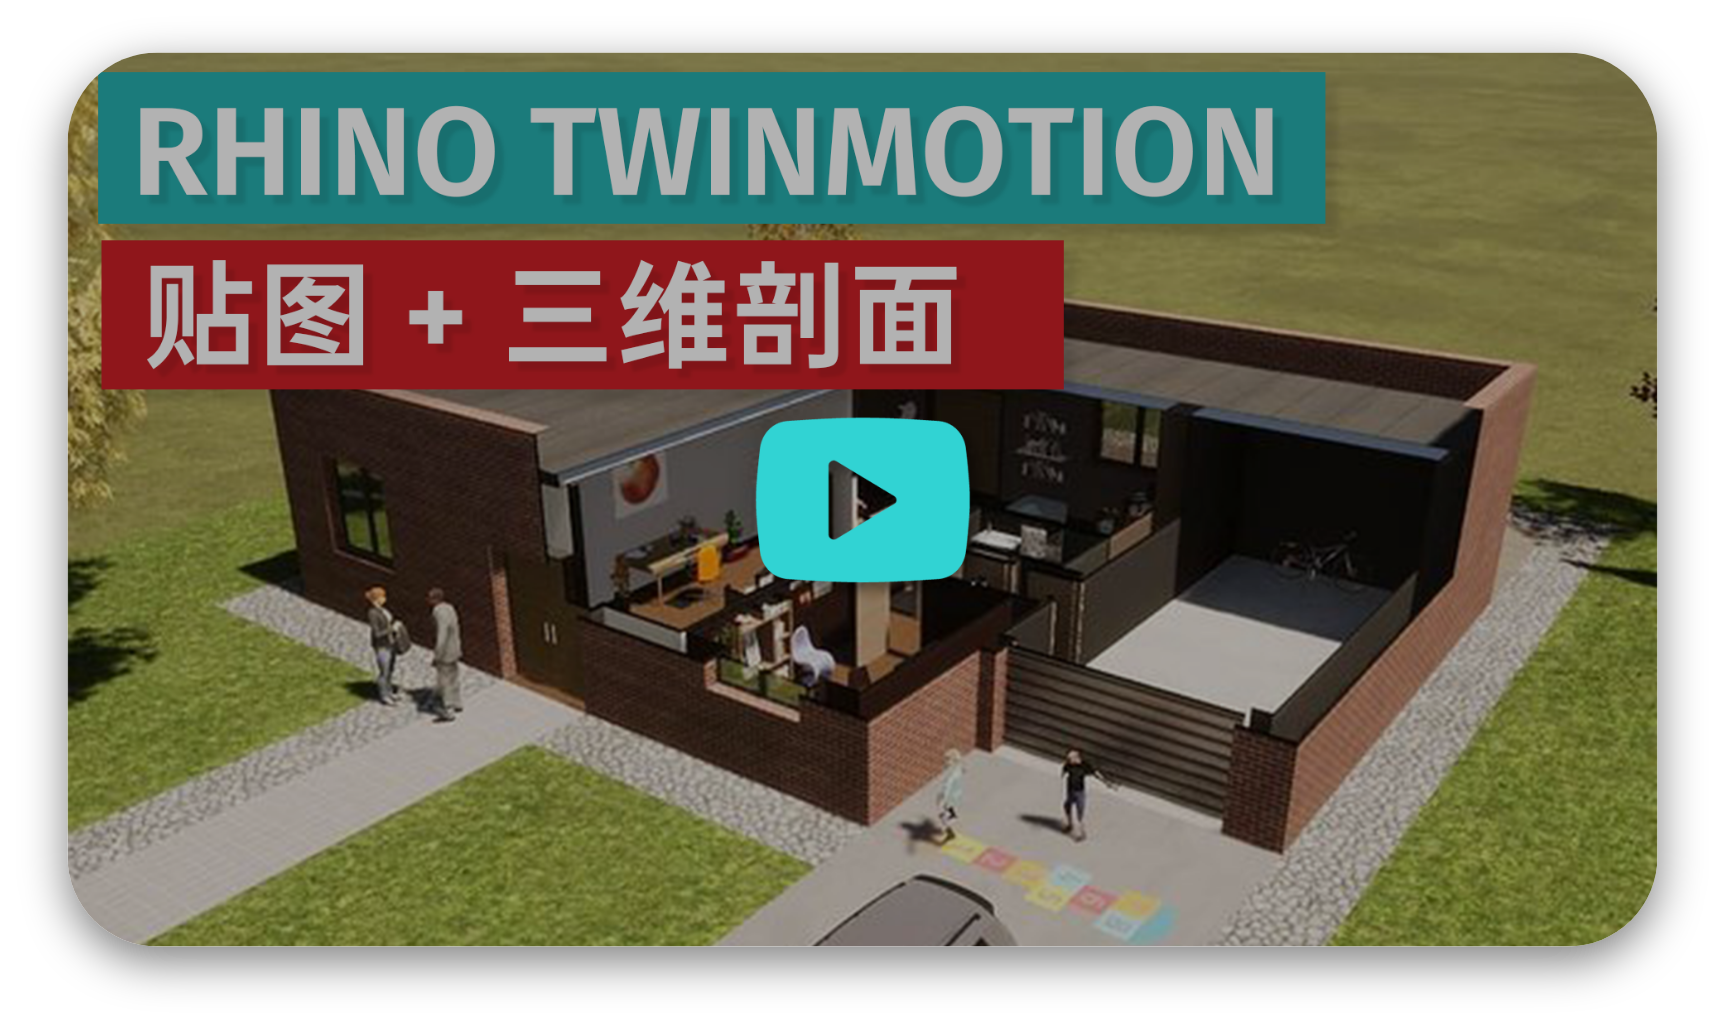 twinmotion rhino ダイレクトリンク